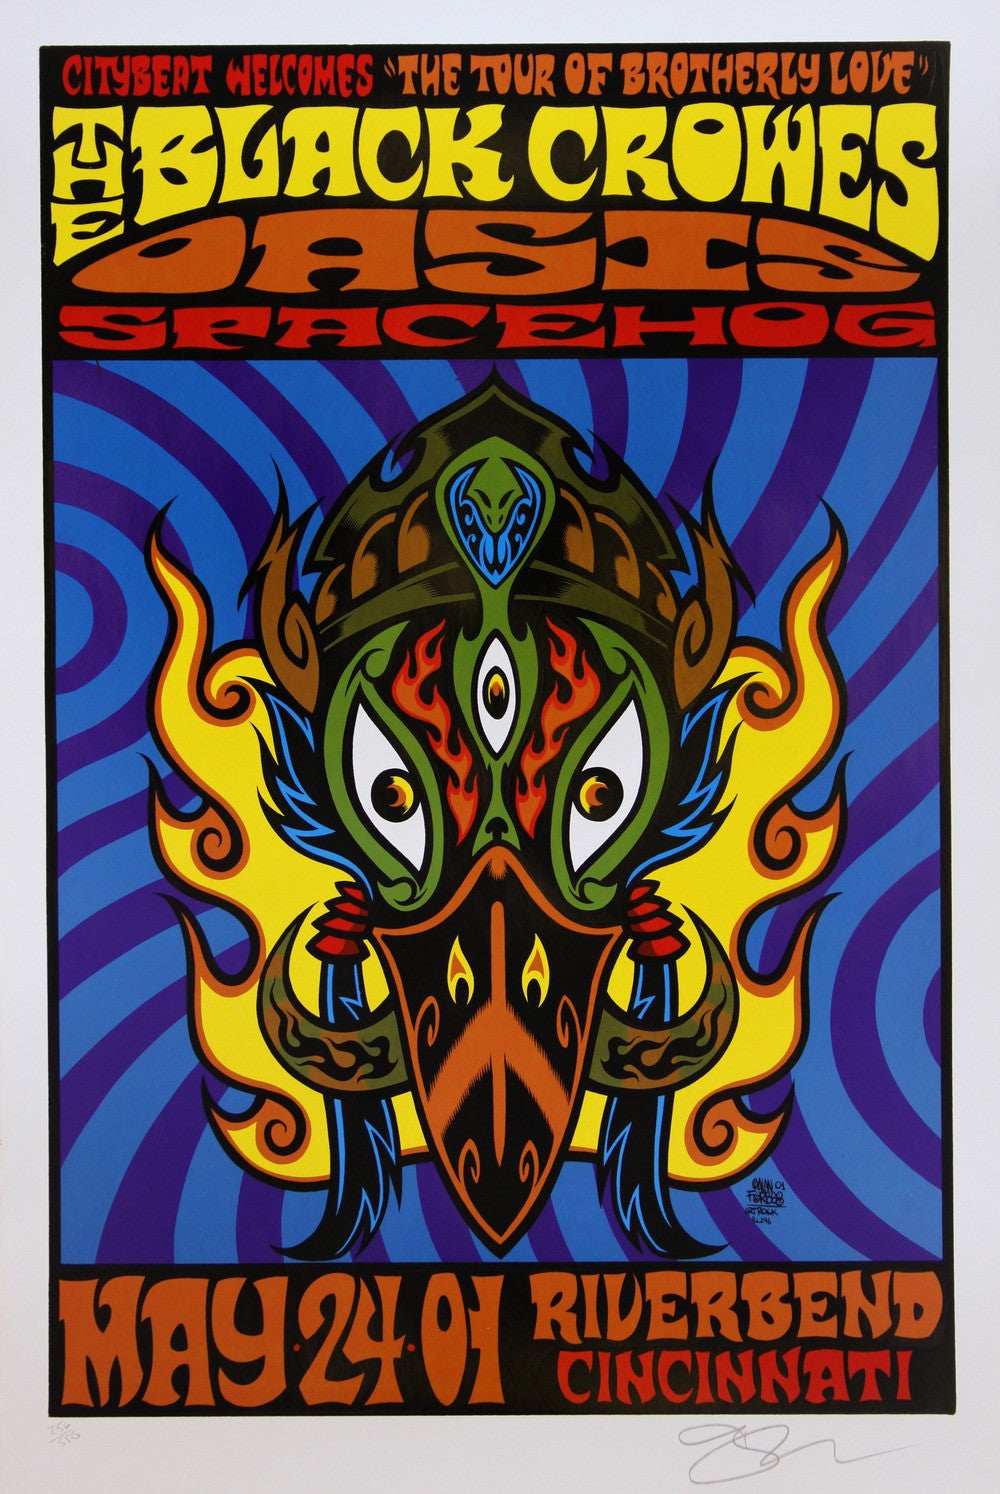 Alan Forbes - 2001 - Black Crowes / Oasis Concert Poster